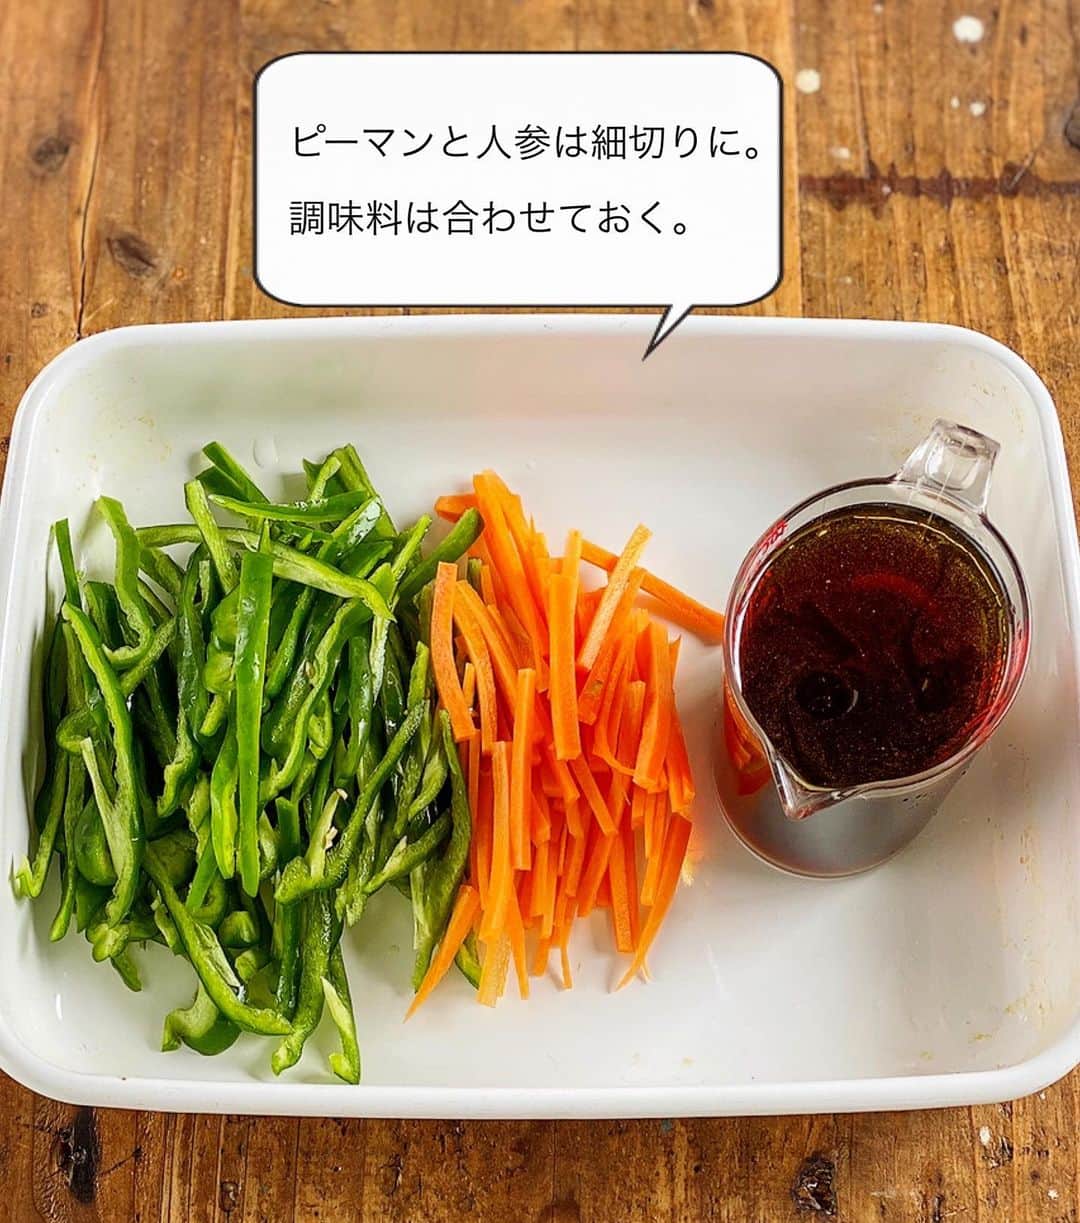 Mizuki【料理ブロガー・簡単レシピ】さんのインスタグラム写真 - (Mizuki【料理ブロガー・簡単レシピ】Instagram)「・﻿ 【レシピ】ーーーーーーーーーーー﻿ ♡レンジde6分！ピーマン春雨♡﻿ ーーーーーーーーーーーーーーーー﻿ ﻿ ﻿ ﻿ おはようございます(*^^*)﻿ ﻿ 今日ご紹介させていただくのは﻿ レンジで一発！のピーマン春雨♡﻿ 旬のピーマンをたっぷり加えて﻿ ヘルシーに仕上げました♩﻿ 適度な歯応えが心地よく﻿ しっかり食べ応えもありますよ〜！﻿ ﻿ 作り方は超簡単(*´艸`)﻿ 春雨は戻さない！！﻿ 材料入れてチンするだけで﻿ あっという間に完成します♡﻿ ﻿ ﻿ ﻿ ーーーーーーーーーーーーーーーーーーーー﻿ 【2人分】﻿ 豚ひき肉...100g﻿ ピーマン...4個﻿ 人参...1/3本﻿ 春雨...60g﻿ ●水...150ml﻿ ●醤油...大1.5﻿ ●砂糖・ごま油...各大1/2﻿ ●塩こしょう...少々﻿ ●にんにくチューブ...2cm﻿ (好みで)白ごま...適量﻿ ﻿ 1.春雨は(長ければ)長さを半分に切る。ピーマンと人参は細切りにする。●は混ぜておく。﻿ 2.耐熱ボウルに春雨、人参、ひき肉、ピーマンの順に入れ、●をまわしかける。ふんわりラップし、600Wのレンジで6分加熱する。﻿ 3.よく混ぜて器に盛り、ごまを振る。﻿ ーーーーーーーーーーーーーーーーーーーー﻿ ﻿ ﻿ ﻿ 《ポイント》﻿ ♦︎春雨は乾燥のまま使用します♩﻿ ♦︎最後は残った水分を春雨に吸わせるようによく混ぜて下さい♩﻿ ﻿ ﻿ ﻿ ﻿ ﻿ ﻿ ﻿ 🆕🆕🆕🆕🆕🆕🆕🆕🆕🆕﻿ 【🎥YouTube更新しました🎥】﻿ (＊ハイライトから飛べます♩)﻿ ↓﻿ 🍕世界一簡単なホケミピザ﻿ 🧁ホケミで！クッキー&クリームマフィン﻿ 🍳揉んで焼くだけ！やみつきチキン﻿ 🌭材料4つ！アメリカンドッグ﻿ ﻿ ﻿ ﻿ ﻿ ﻿ 5刷重版しました🔻﻿ 本当にありがとうございます🙇‍♀️﻿ ＿＿＿＿＿＿＿＿＿＿＿＿＿＿＿＿＿＿＿﻿ 📕\ \ 新刊発売中 / /📕﻿ 簡単・時短！ 毎日のごはんがラクになる﻿ ✨🦋 【 #Mizukiの今どき和食 】🦋✨﻿ ＿＿＿＿＿＿＿＿＿＿＿＿＿＿＿＿＿＿＿﻿ なるべく少ない材料で﻿ 手間も時間も省きながら﻿ 簡単にできるおいしい和食レシピ♩﻿ 簡単に失敗なくマスターできる一冊で﻿ もっと気軽に、カジュアルに﻿ 和食を楽しんで下さいね(*^^*)﻿ ＿＿＿＿＿＿＿＿＿＿＿＿＿＿＿＿＿＿＿﻿ ﻿ ﻿ ﻿ ＿＿＿＿＿＿＿＿＿＿＿＿＿＿＿＿＿﻿ 🎀6刷重版しました🎀﻿ 混ぜて焼くだけ。はじめてでも失敗しない！﻿ 【#ホットケーキミックスのお菓子 】﻿ ﻿ 一冊まるっとホケミスイーツ♩﻿ 普段のおやつから﻿ 特別な日にも使えるレシピを﻿ この一冊に詰め込みました(*^^*)﻿ ホットケーキミックスを使えば﻿ 簡単に本格的なお菓子が作れますよ♡﻿ ＿＿＿＿＿＿＿＿＿＿＿＿＿＿＿＿＿﻿ ﻿ ⭐️ストーリー、ハイライト、プロフ画面に﻿ 本のURLを貼らせていただいております♩﻿ →(@mizuki_31cafe )﻿ ﻿ ﻿ ﻿ ﻿ #レンジ#ピーマン#春雨#ひき肉#旬#Mizuki#簡単レシピ#時短レシピ#節約レシピ#料理#レシピ#フーディーテーブル#マカロニメイト#おうちごはん#デリスタグラマー#料理好きな人と繋がりたい#おうちごはん#写真好きな人と繋がりたいlover#foodpic#follow#cooking#recipe#lin_stagrammer#foodporn#yummy#レンジでピーマン春雨m」6月29日 7時05分 - mizuki_31cafe